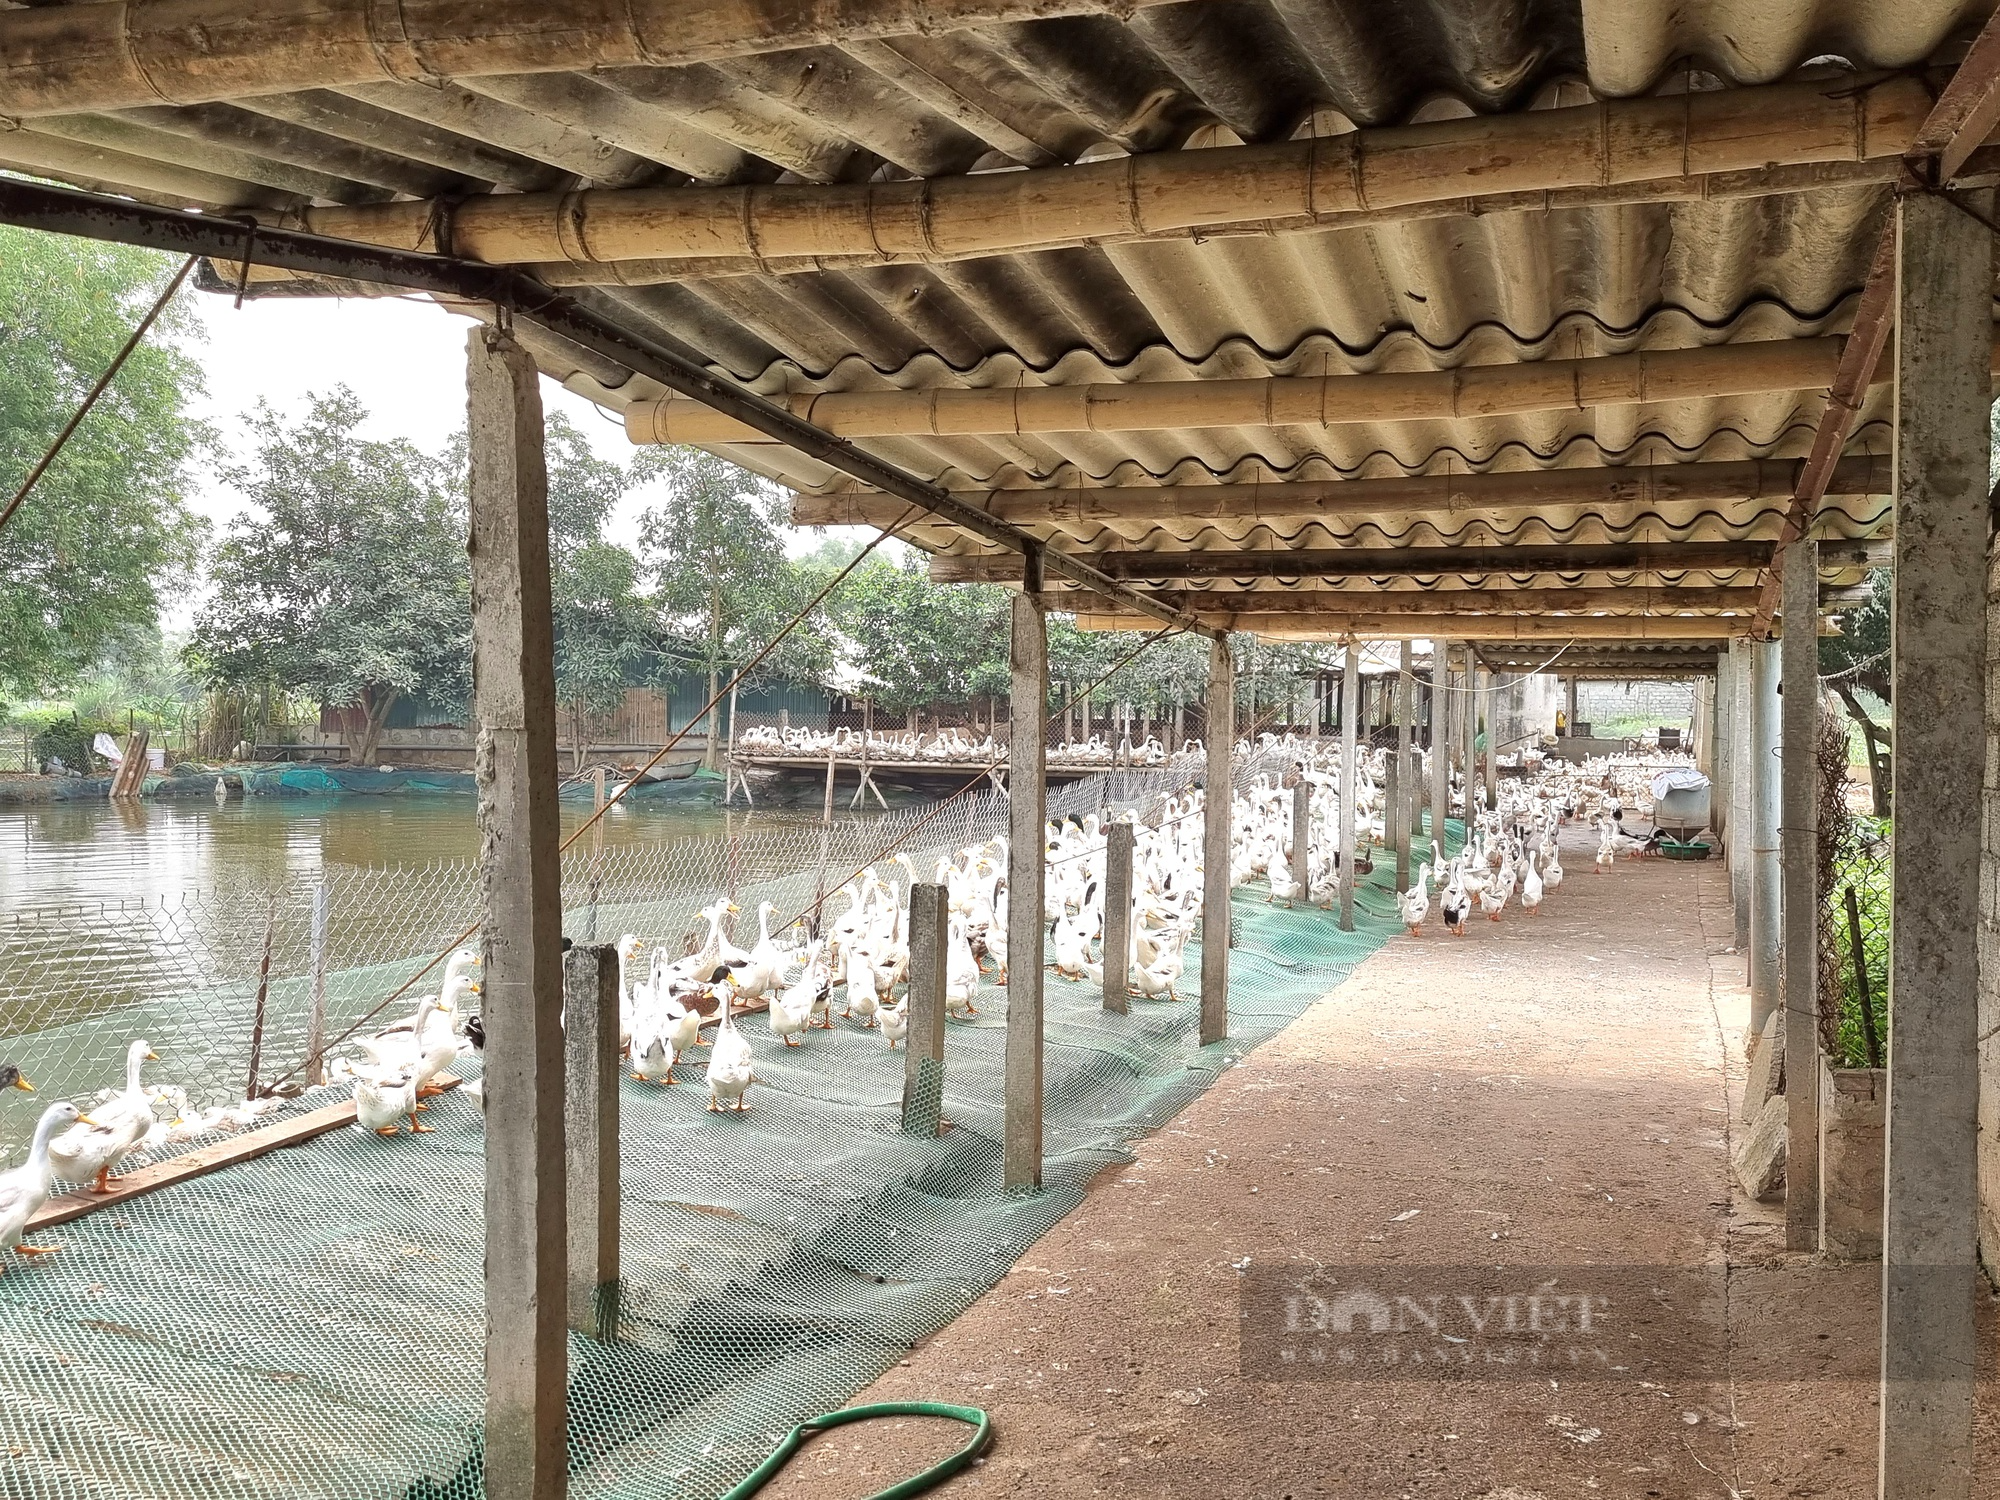 9X Ninh Bình nuôi 12.000 con vịt đẻ trứng lãi gần 200 triệu đồng/năm - Ảnh 7.